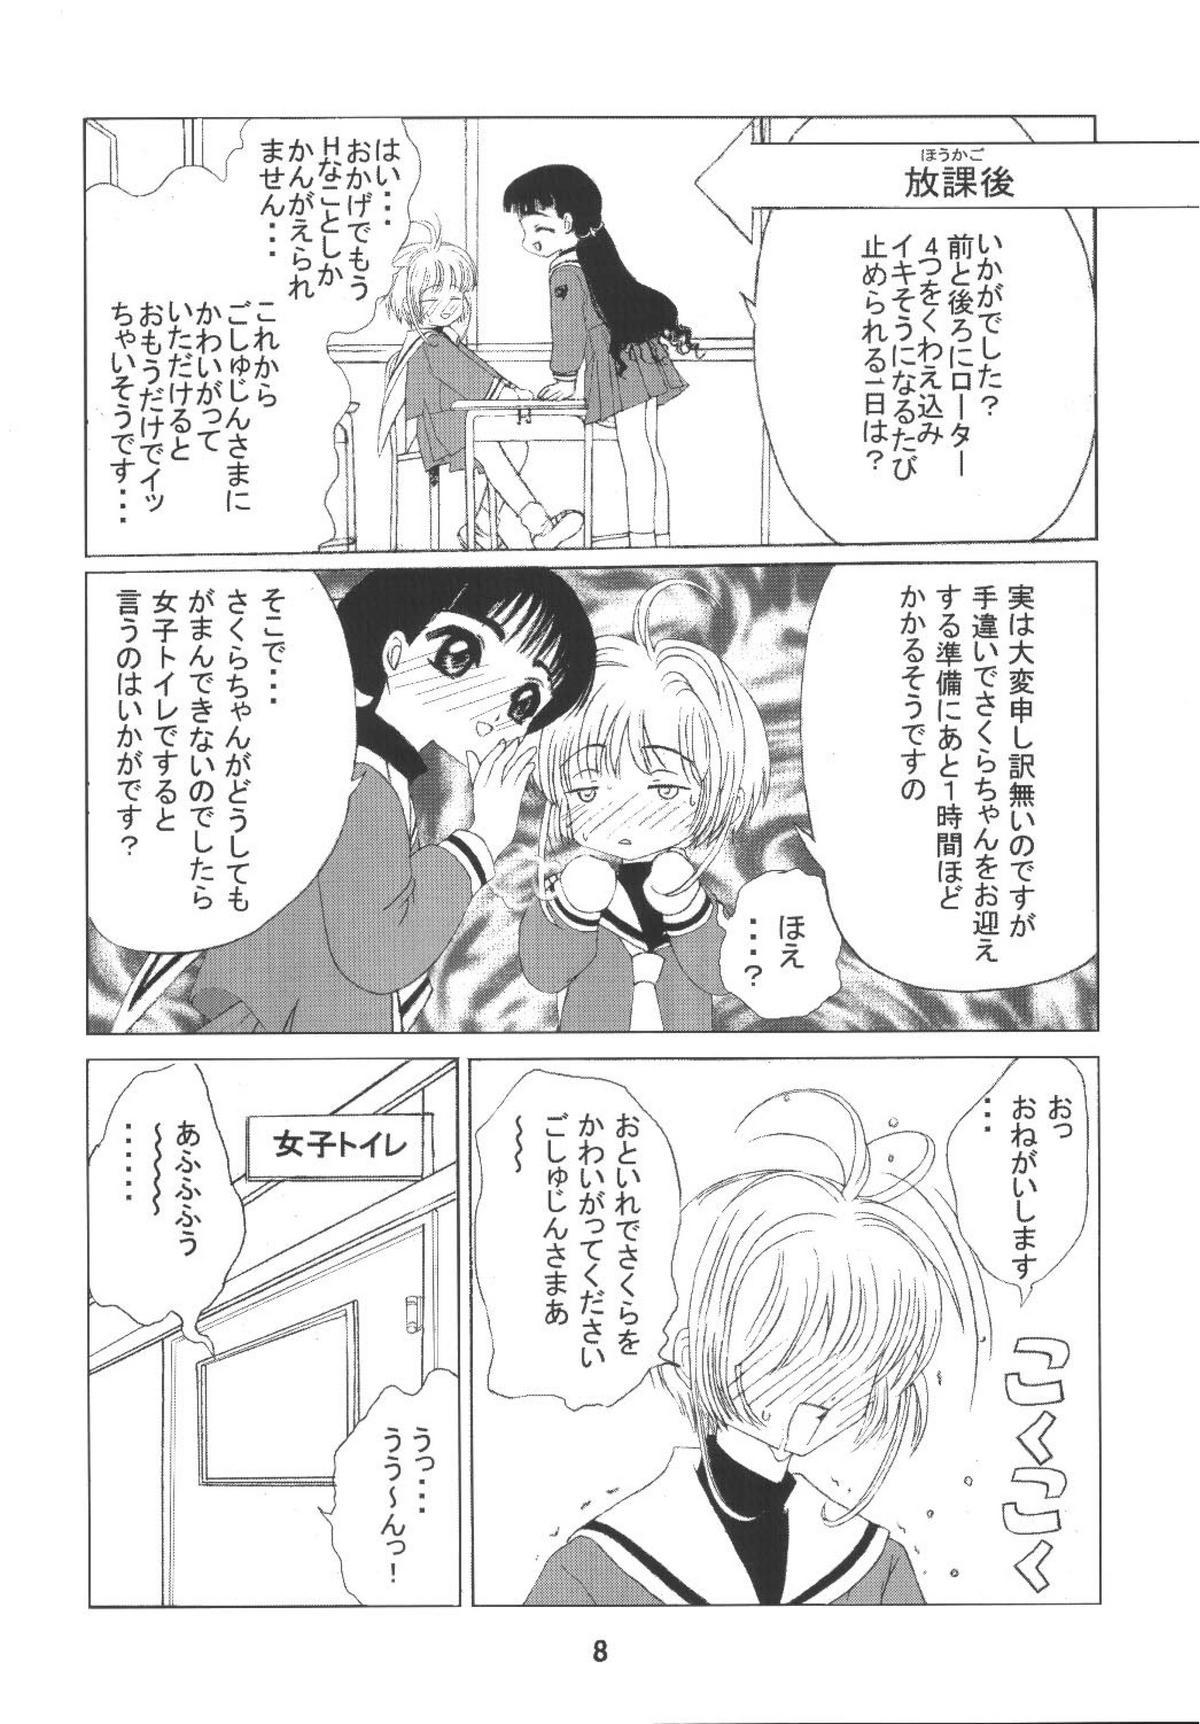 Long Kuuronziyou 8 Sakura-chan de Asobou 4 - Cardcaptor sakura Spank - Page 10